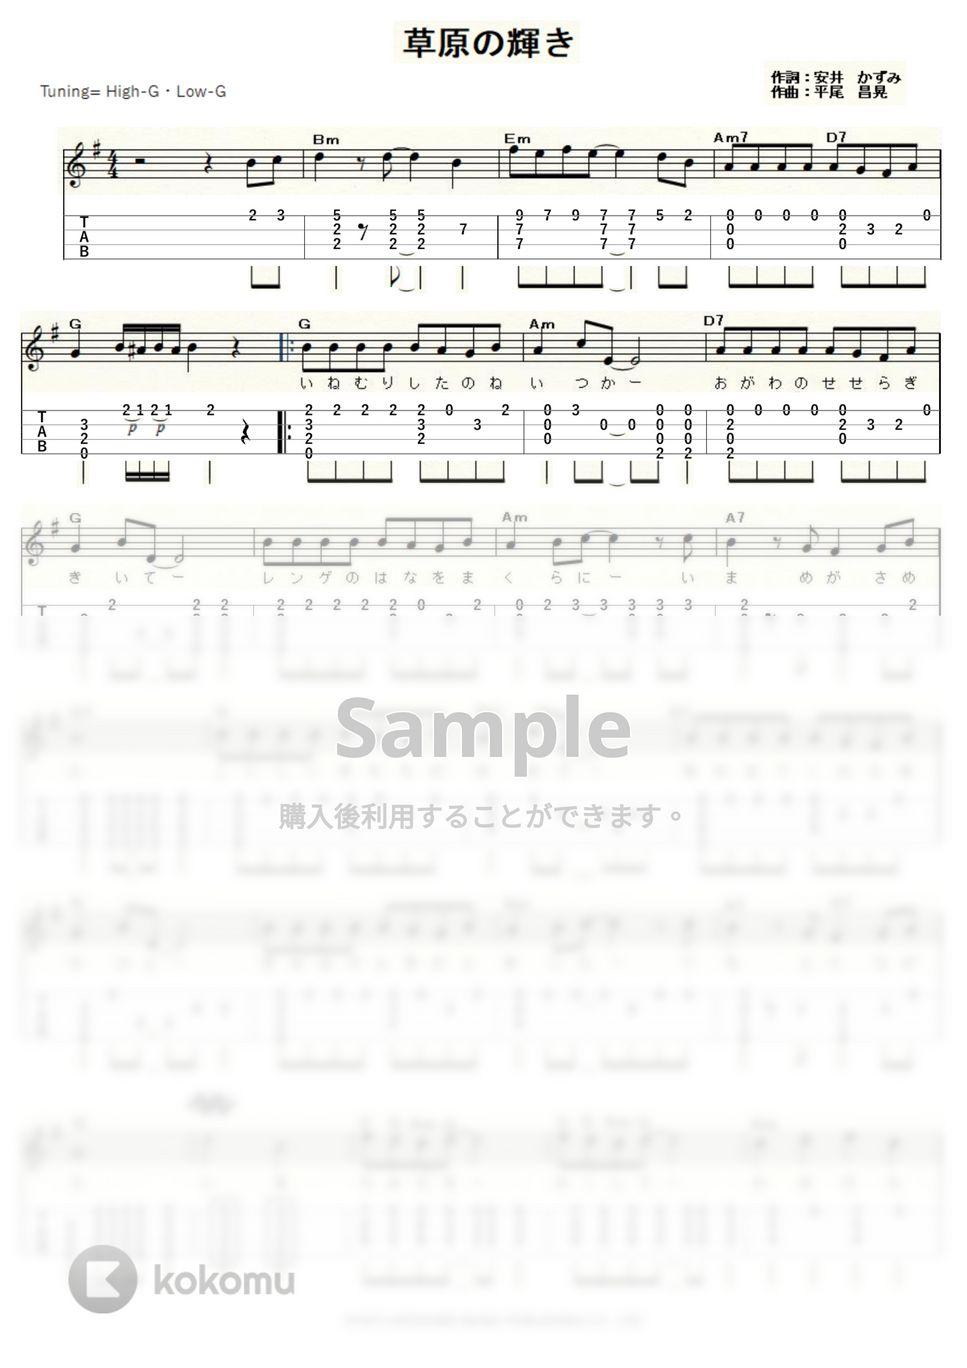 アグネス・チャン - 草原の輝き (ｳｸﾚﾚｿﾛ / High-G・Low-G / 中級) by ukulelepapa